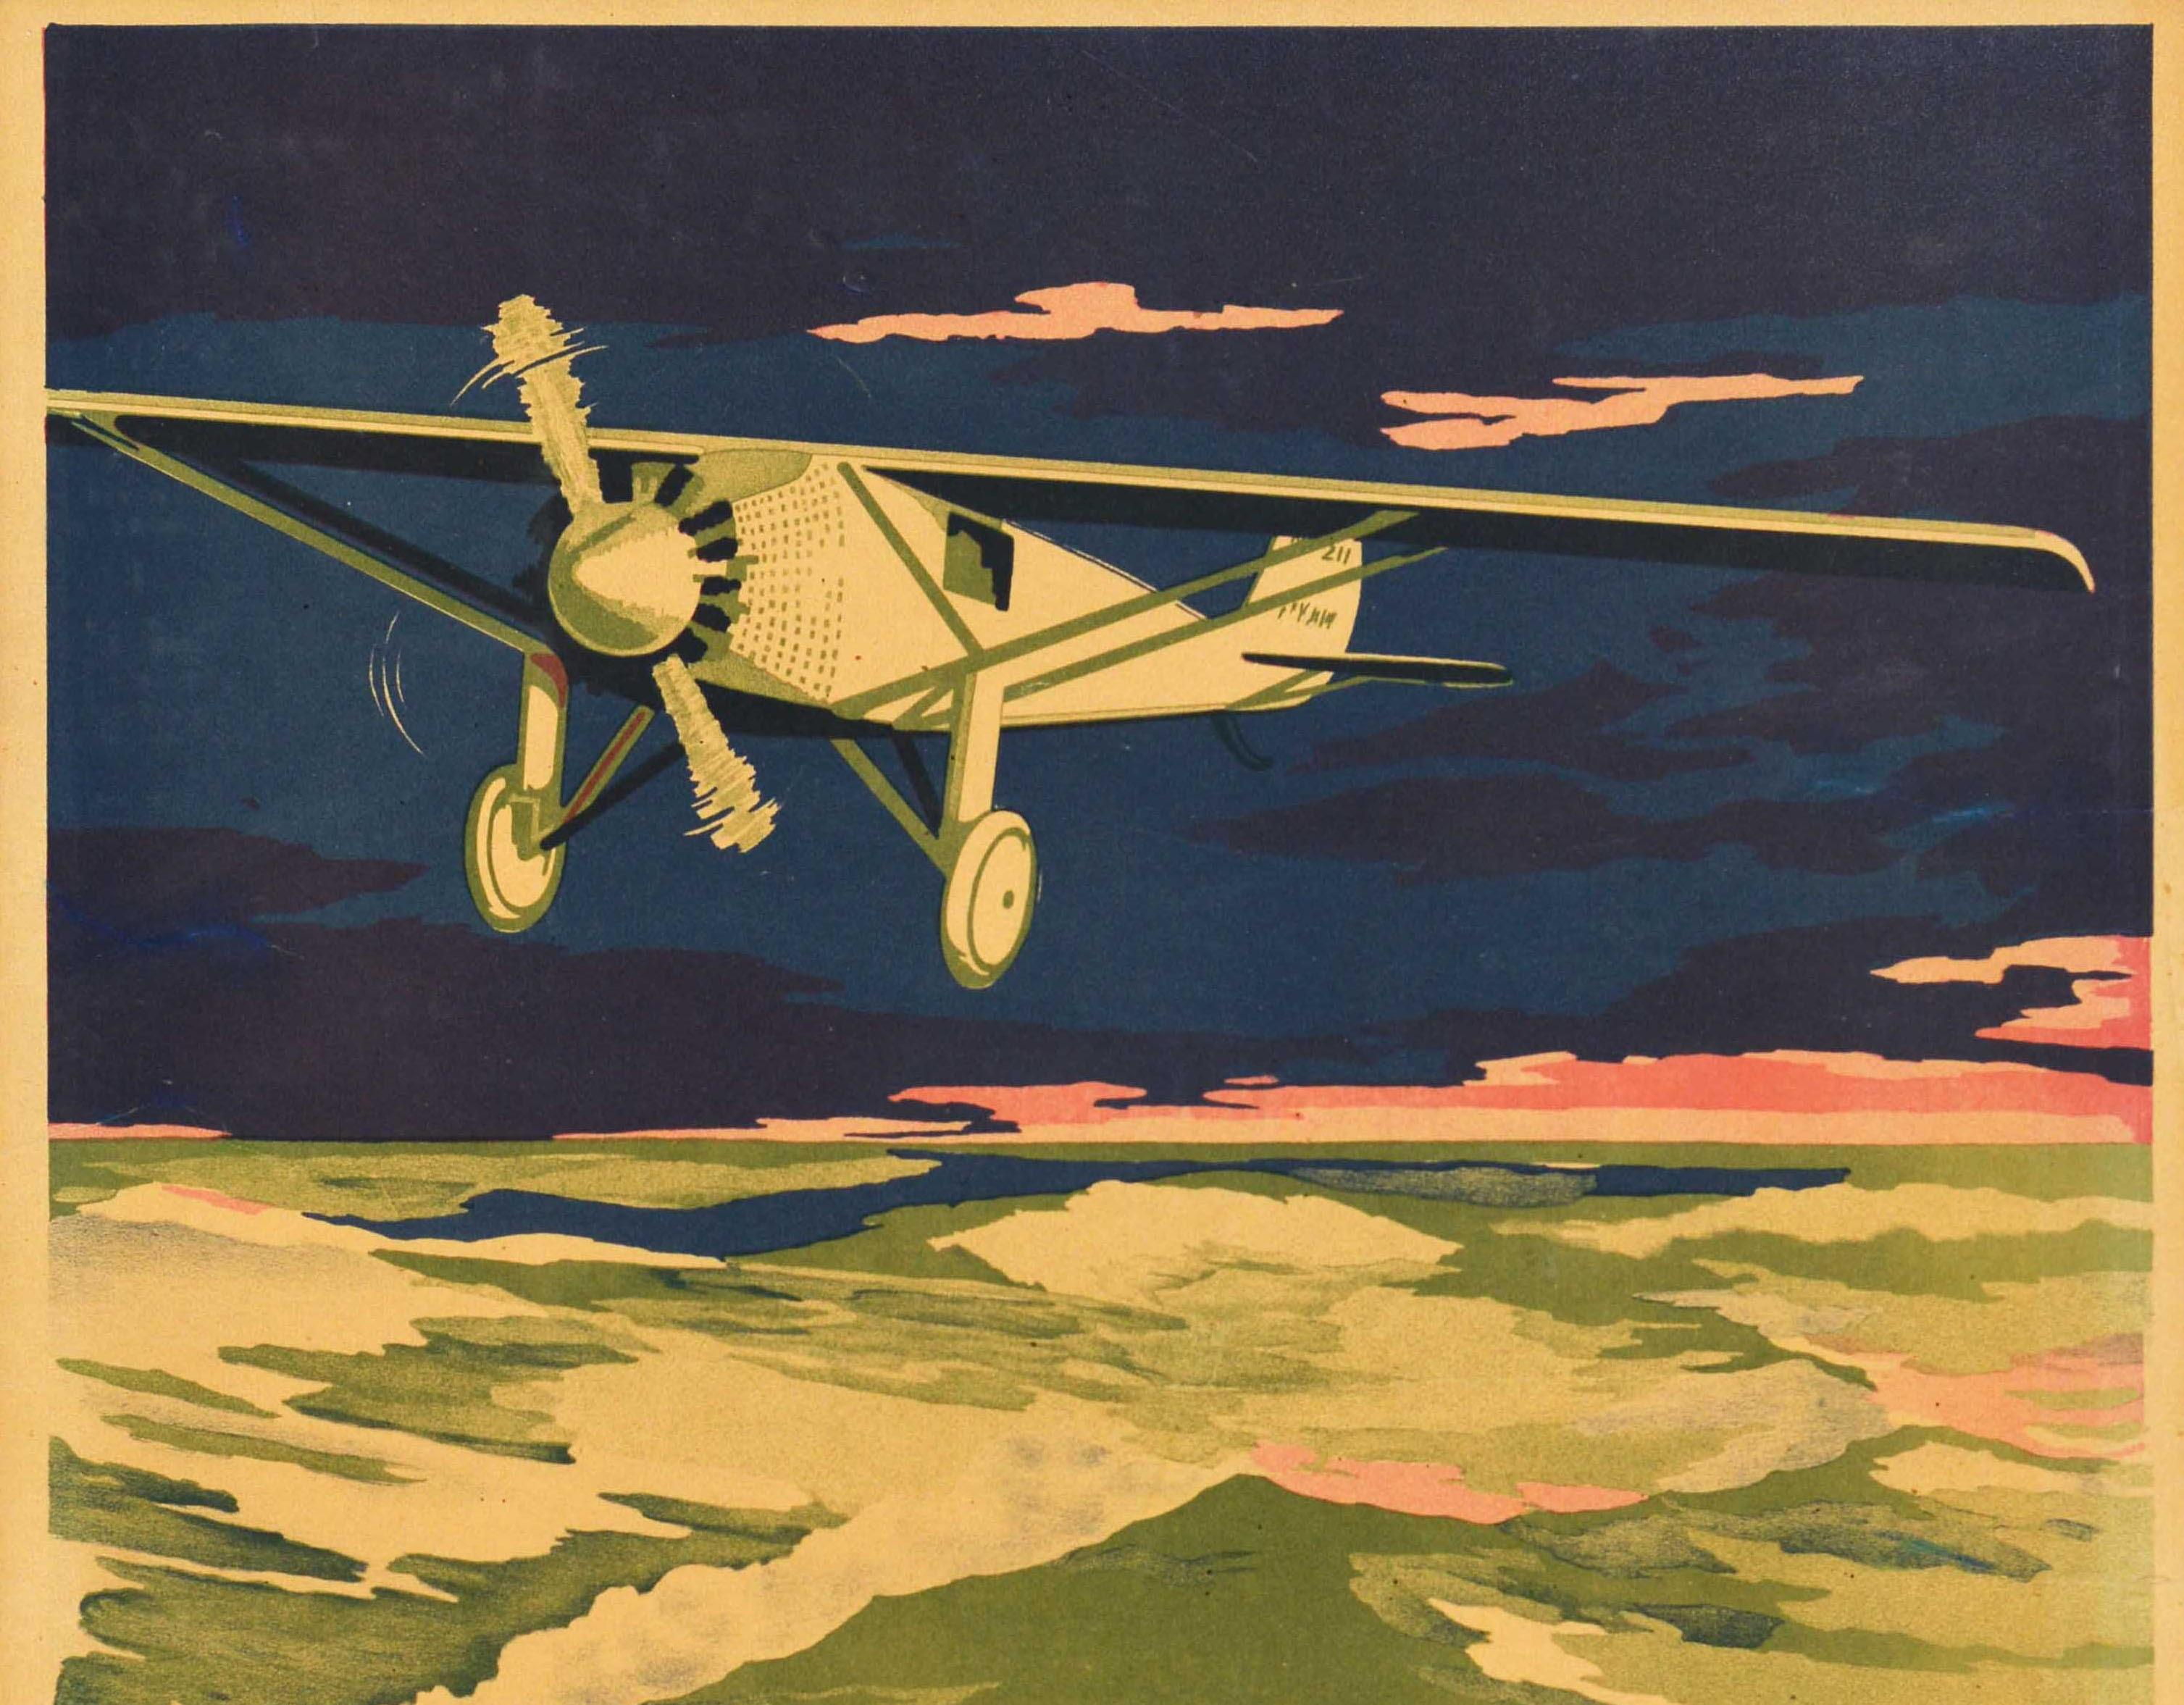 Originales deutsches Motivationsplakat für den Arbeitsplatz, herausgegeben von der Firma Parker-Holladay in Berlin, mit der Illustration eines Flugzeugs, das nachts über das Meer fliegt, und dem Zitat auf den Wellen darunter - Für den, der immer